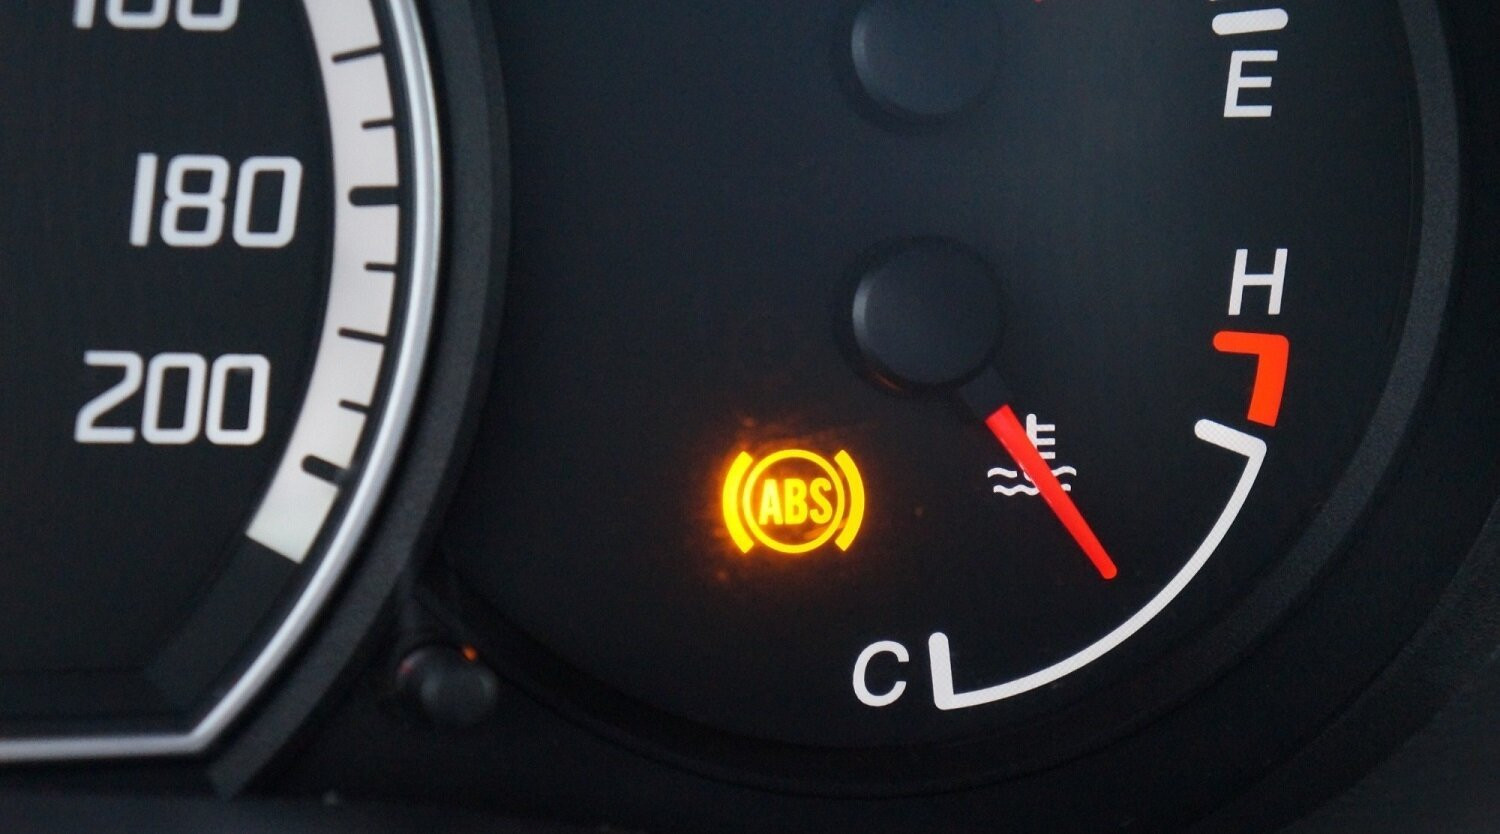 Lái xe không nên quá lo lắng khi phanh ABS bật sáng. (Ảnh minh họa).